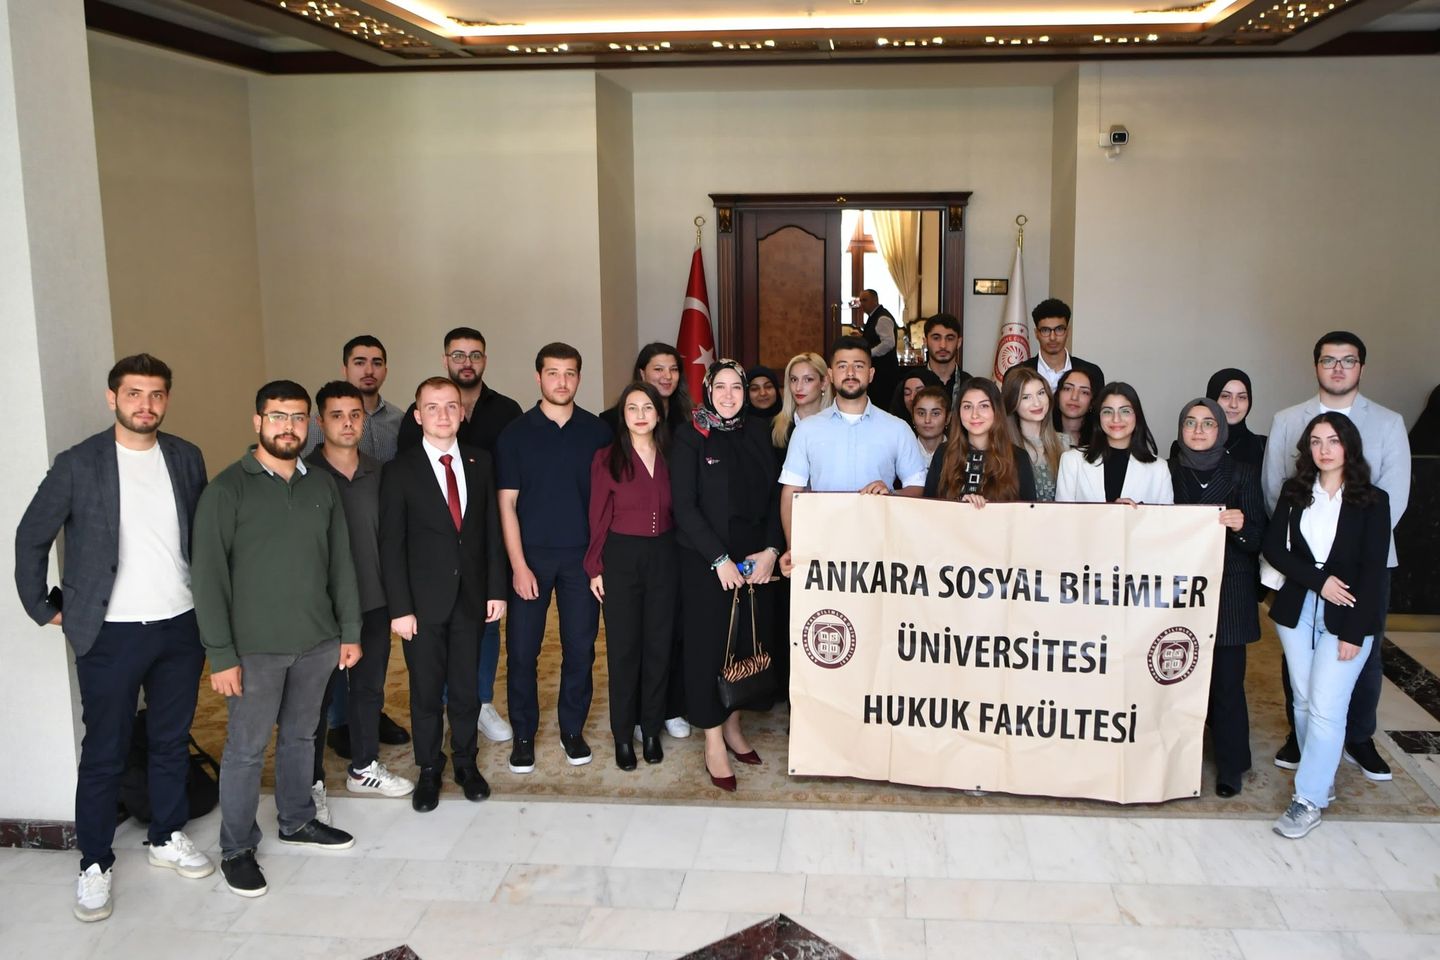 Ankara Sosyal Bilimler Üniversitesi Hukuk Fakültesi Öğrencileri Ankara Valisi Vasip Şahin'i Ziyaret Etti